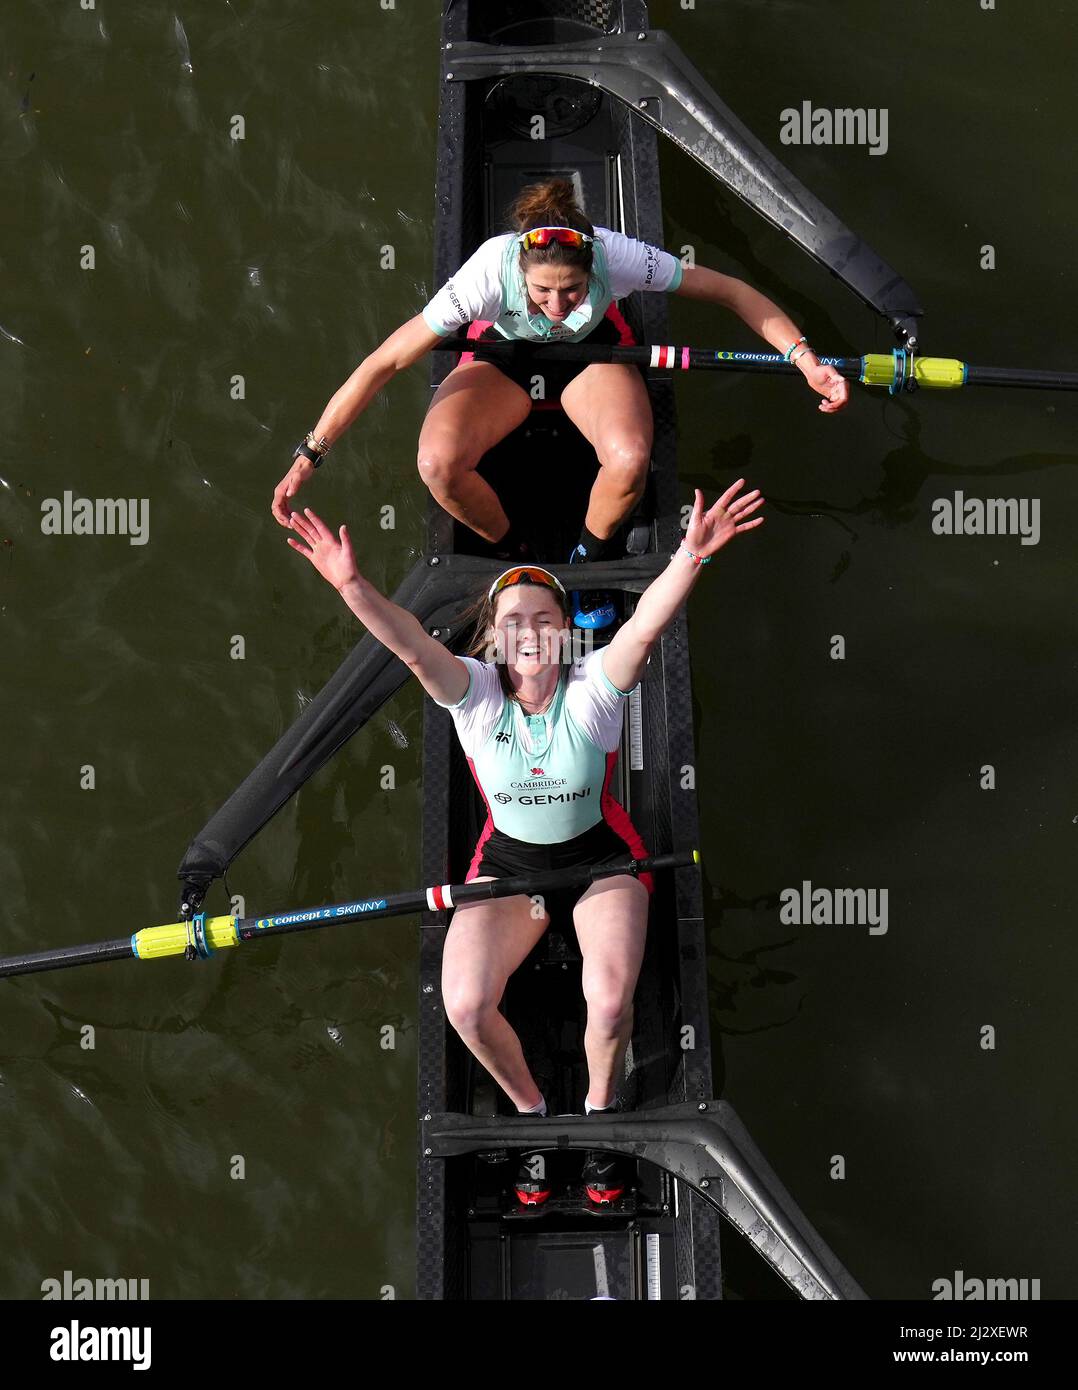 Caoimhe Dempsey und Adriana Perez Rotondo aus Cambridge feiern nach dem Sieg beim Women's Boat Race 76. auf der Themse in London. Bilddatum: Sonntag, 3. April 2022. Stockfoto